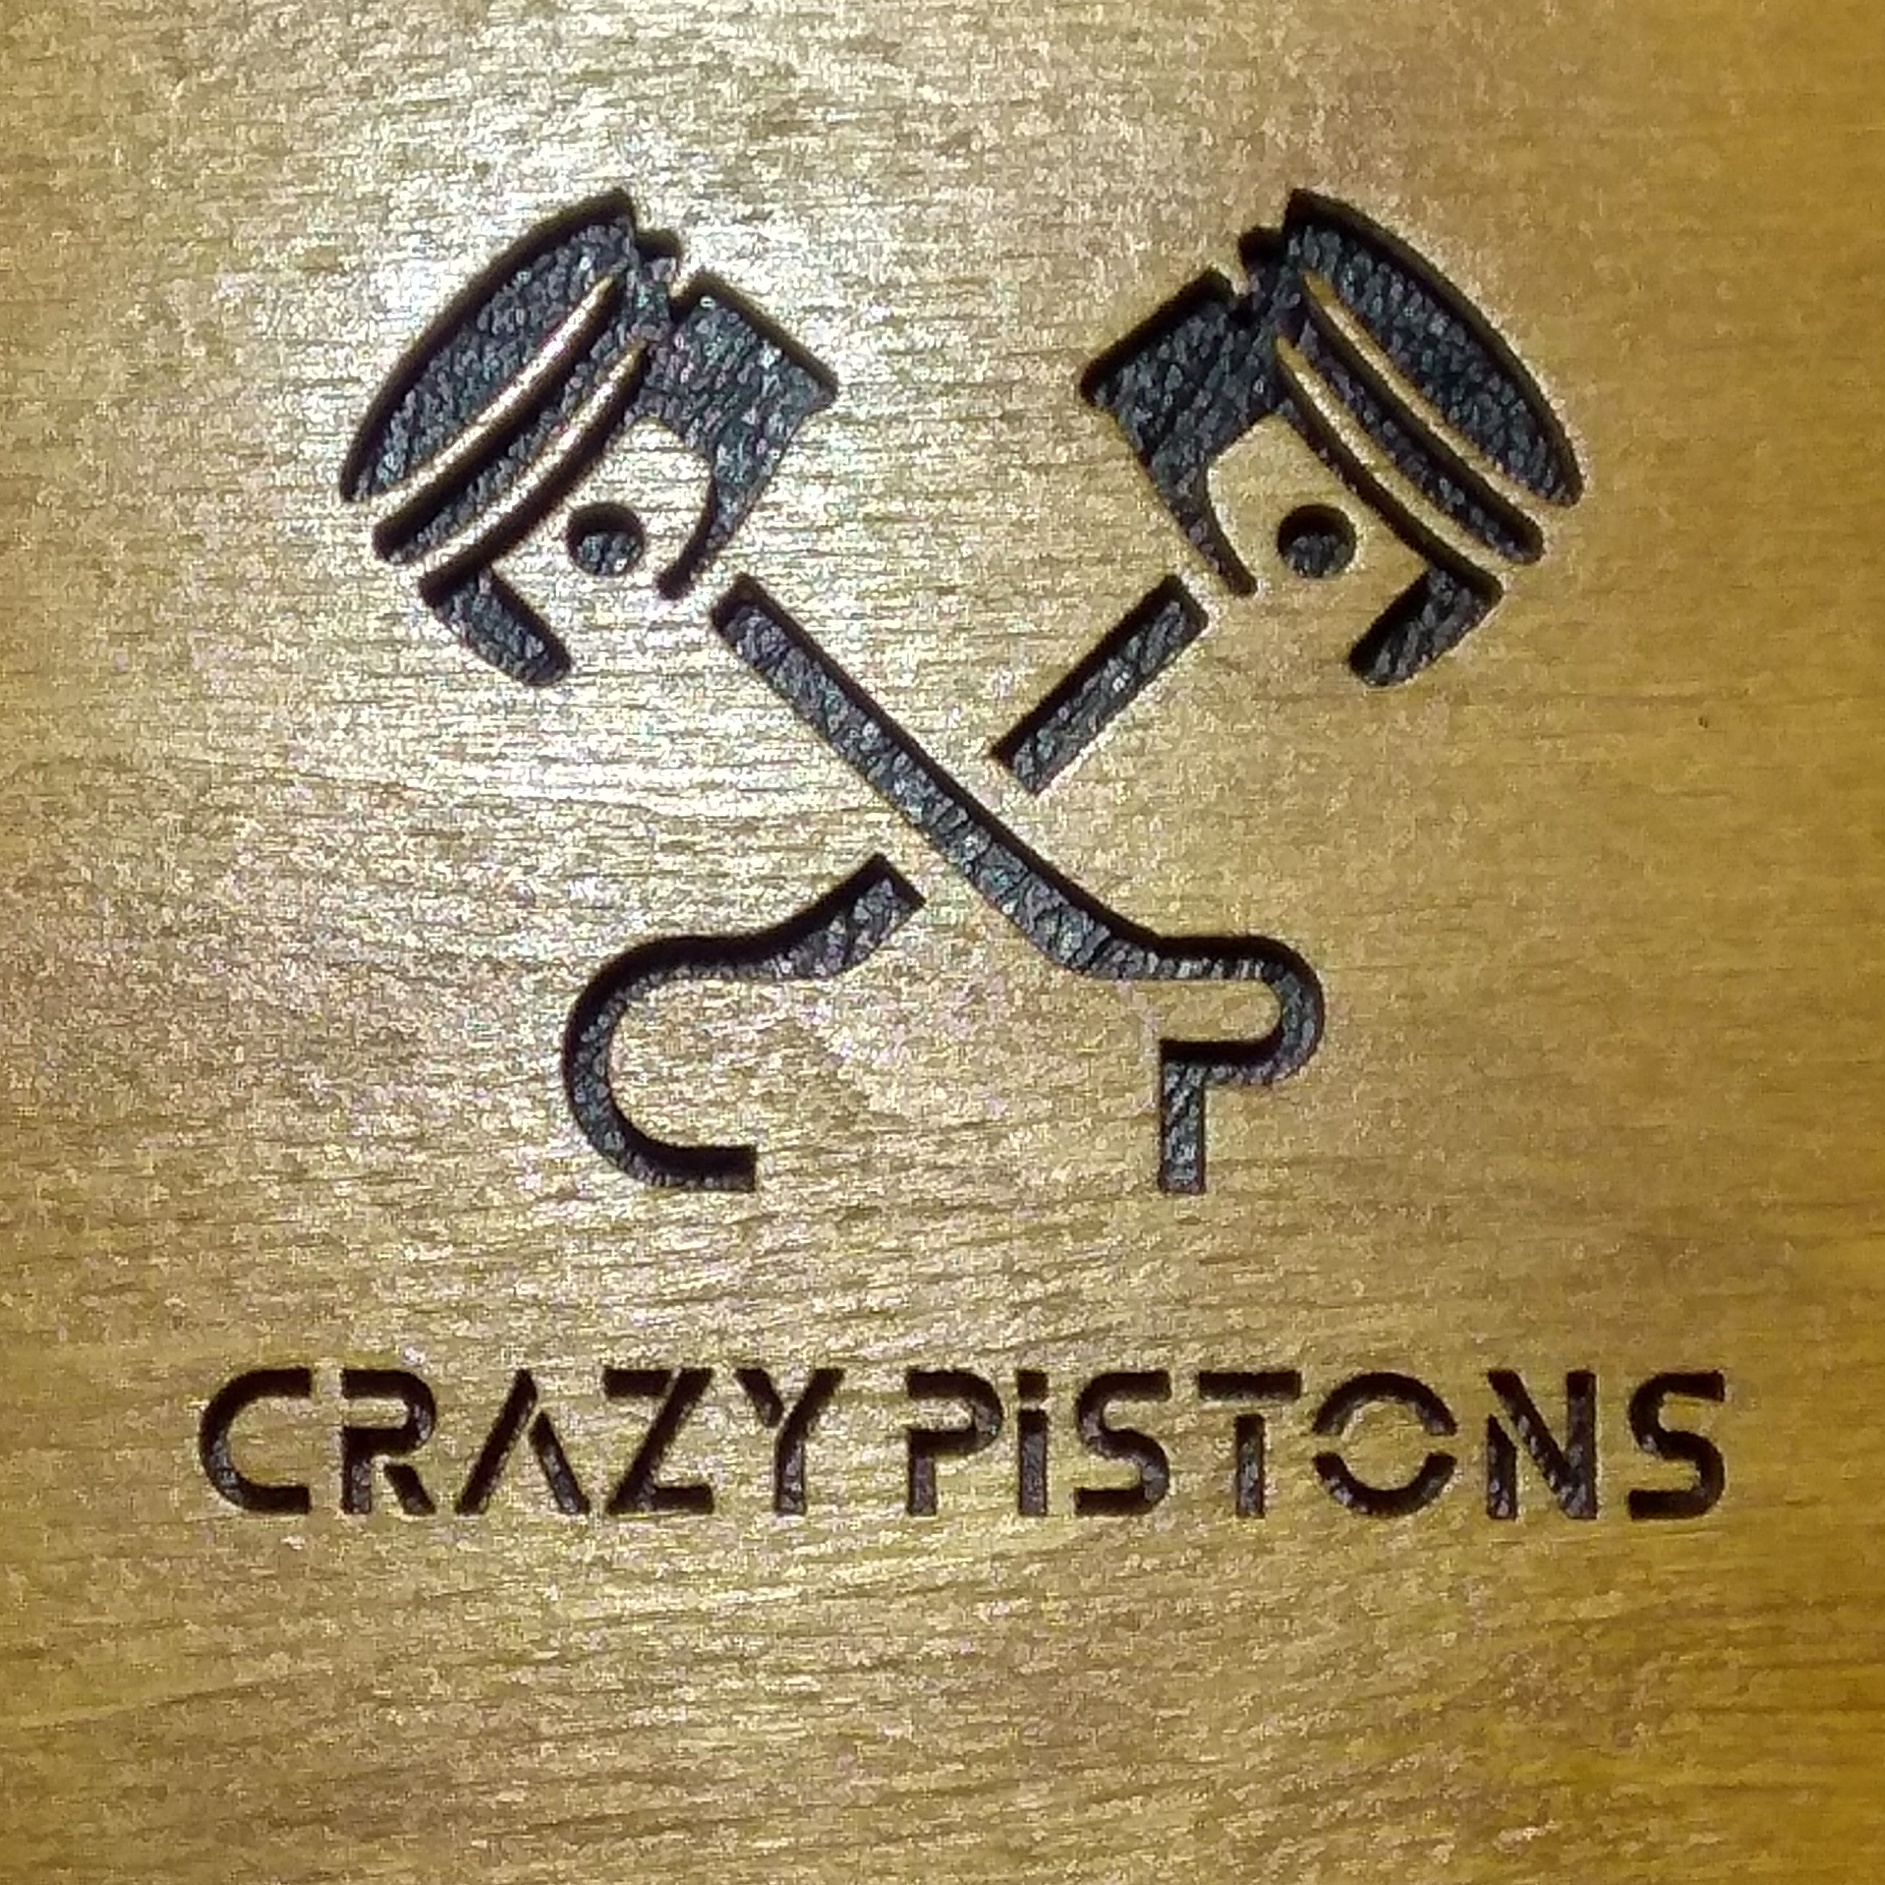 crazypiston